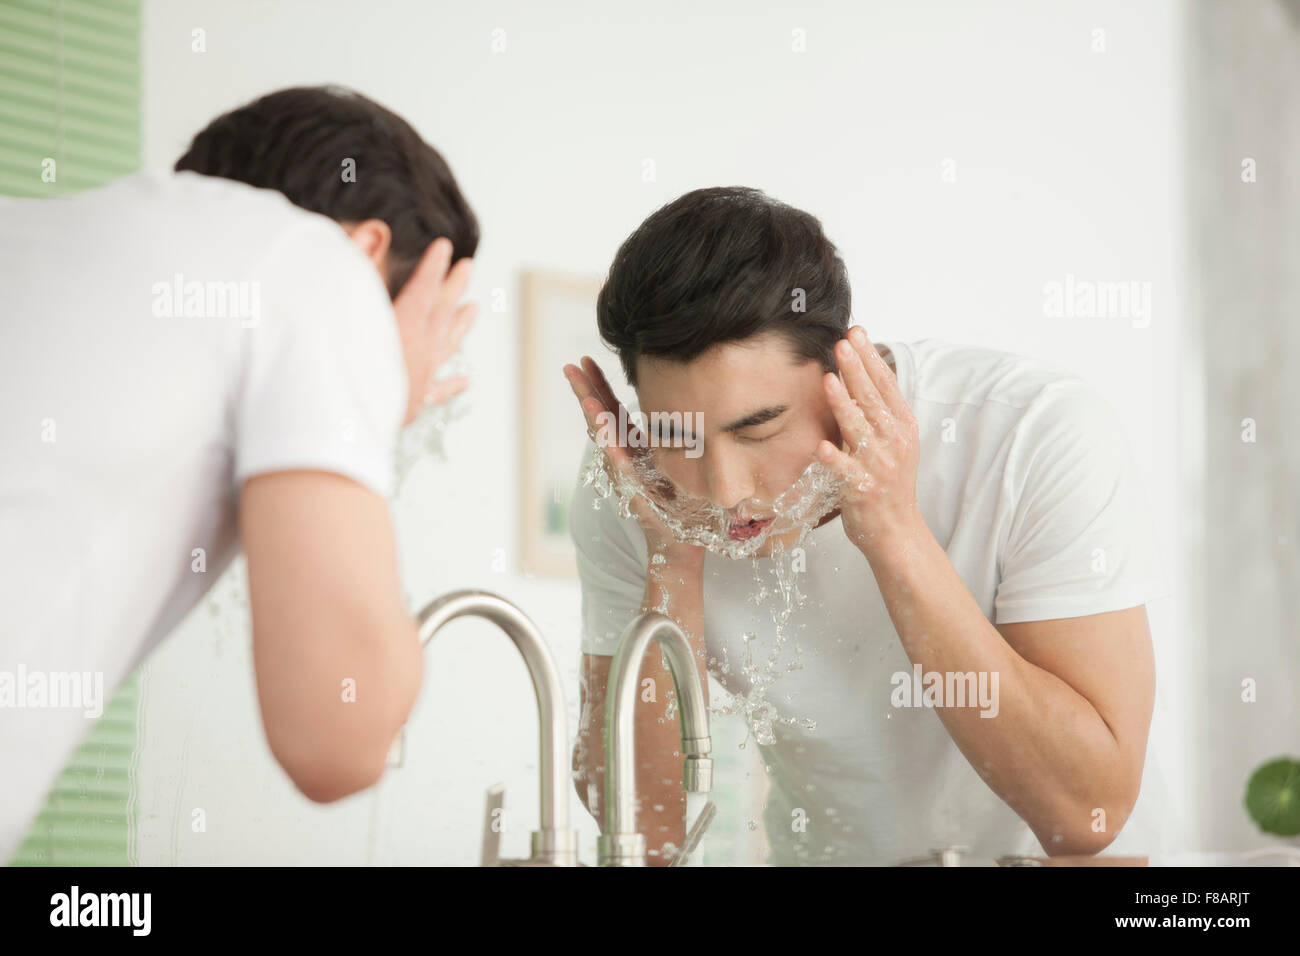 Portrait de jeune homme lave son visage au lavabo de salle de bains Banque D'Images